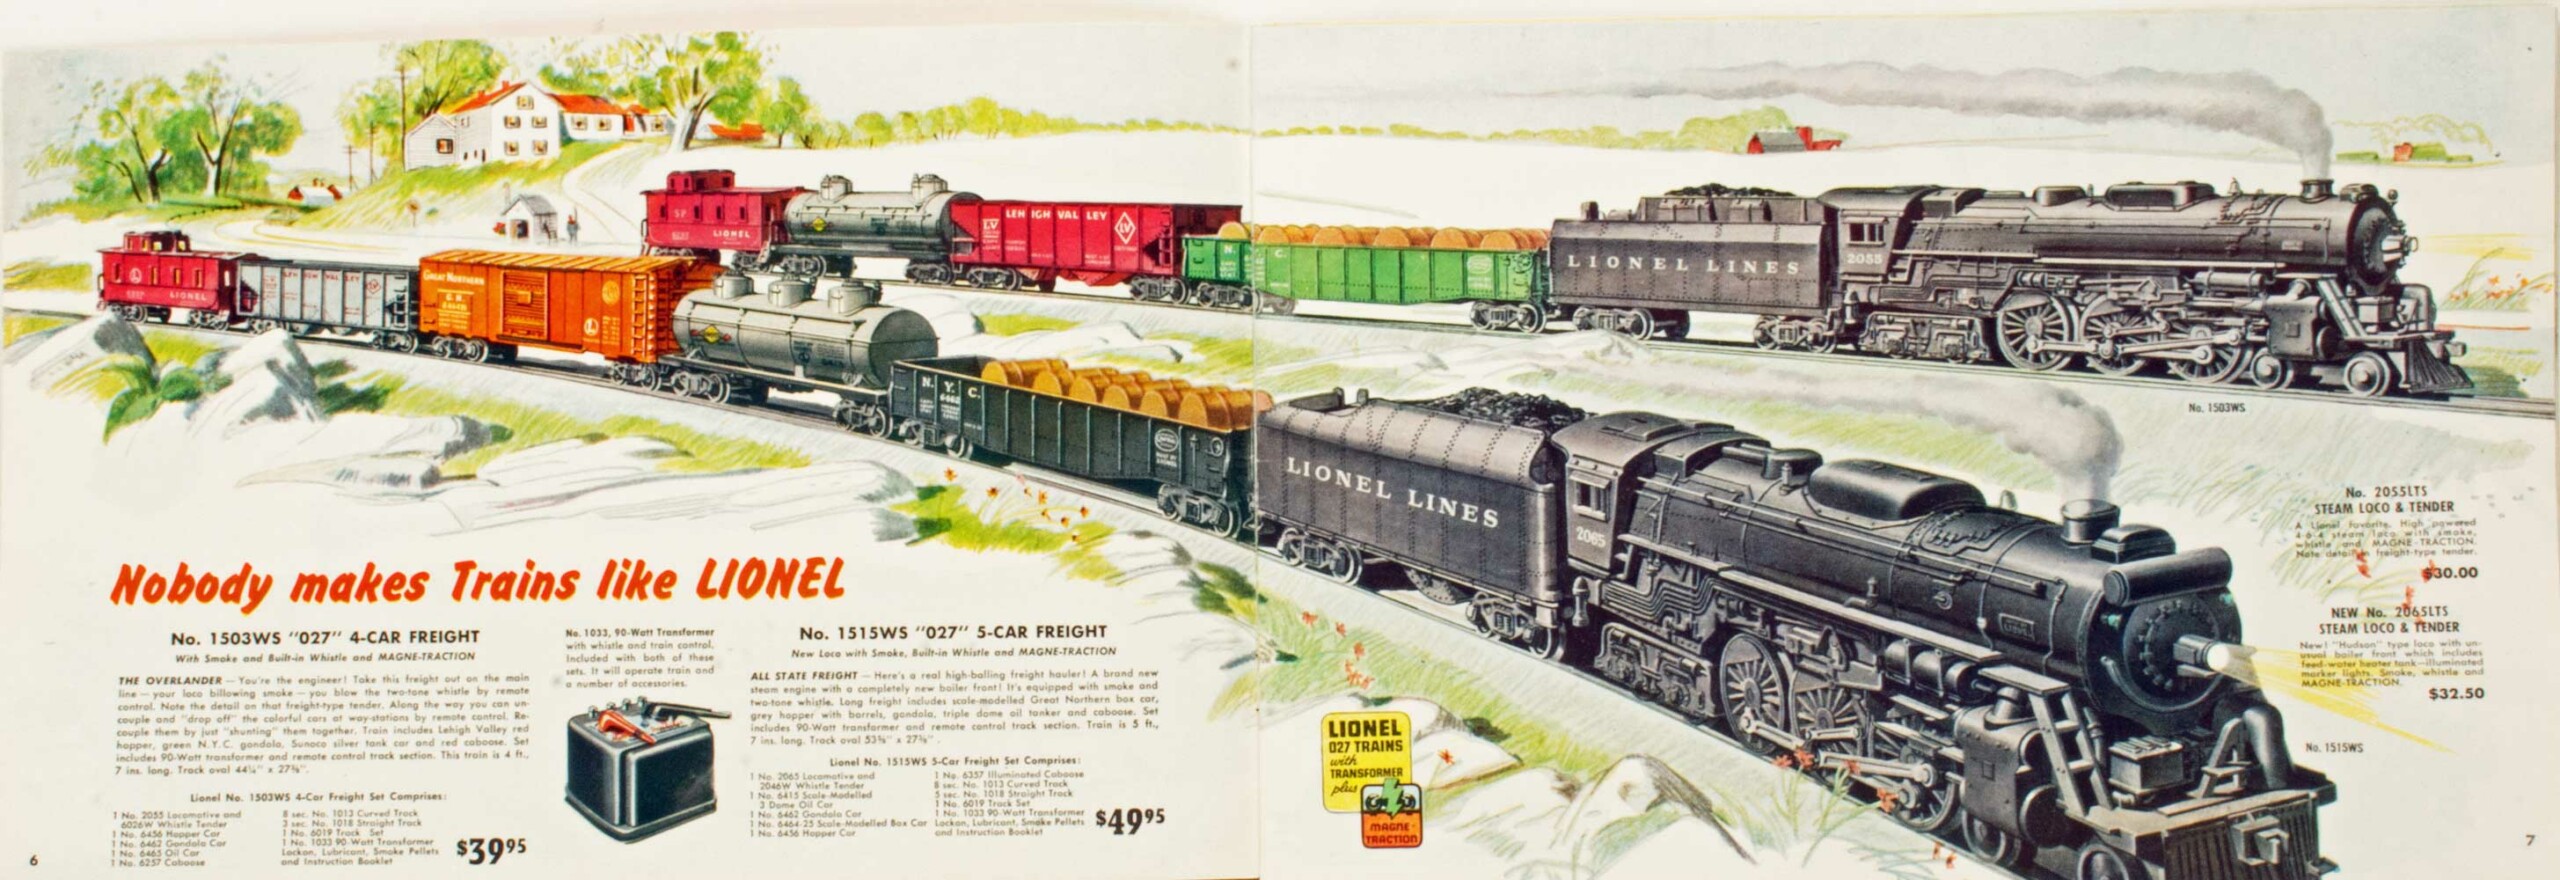 1951 Lionel Train Model Railroad Catalog Sales Brochure Excellent Original  51